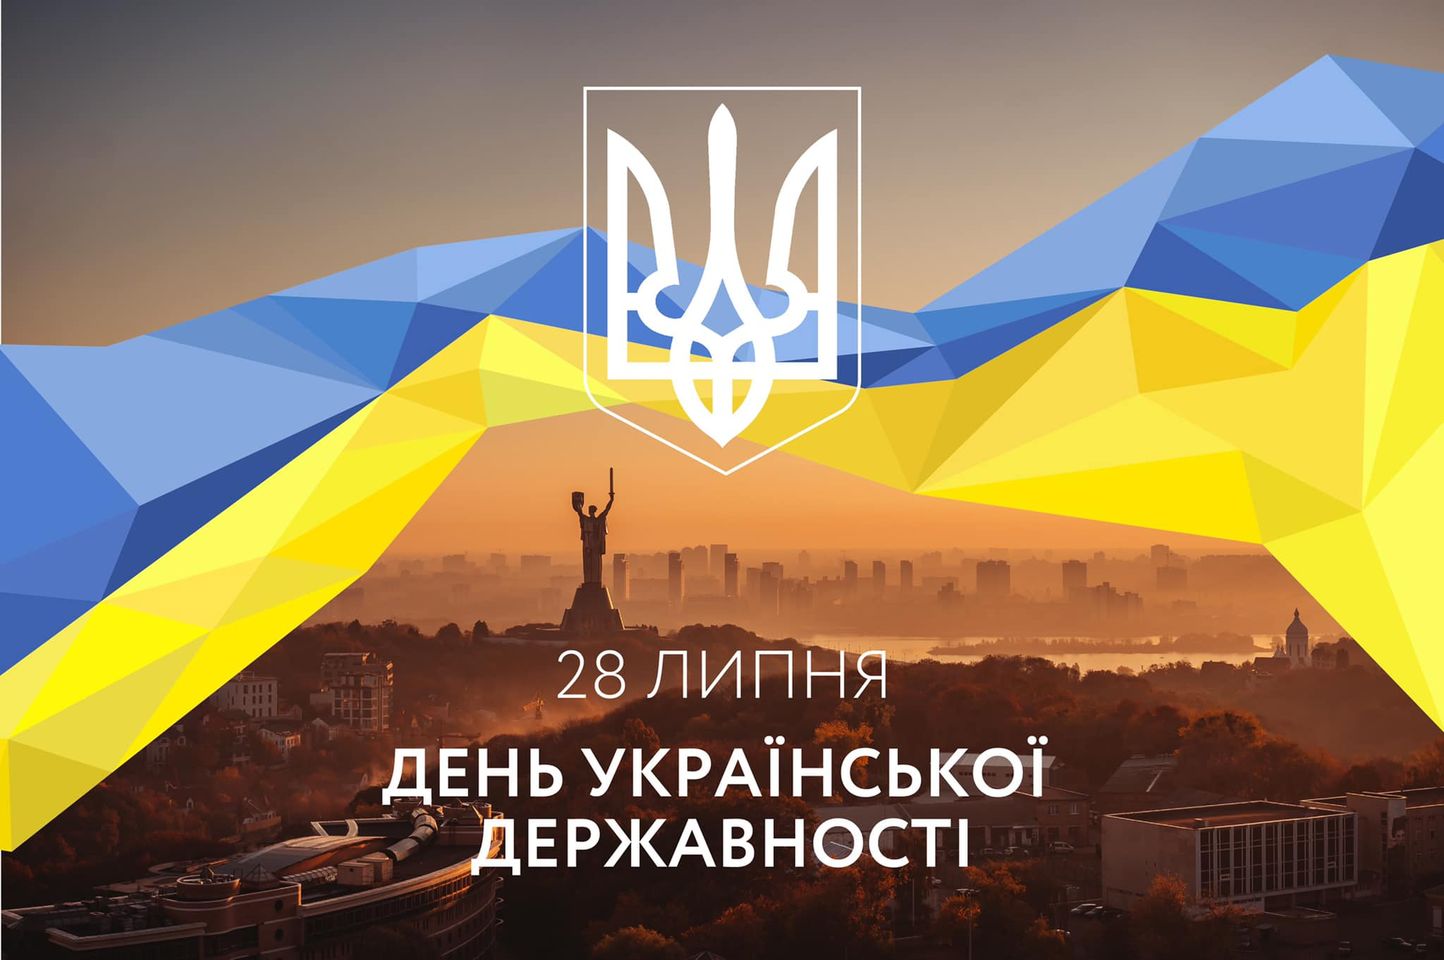 Вітаємо з Днем Української Державності!